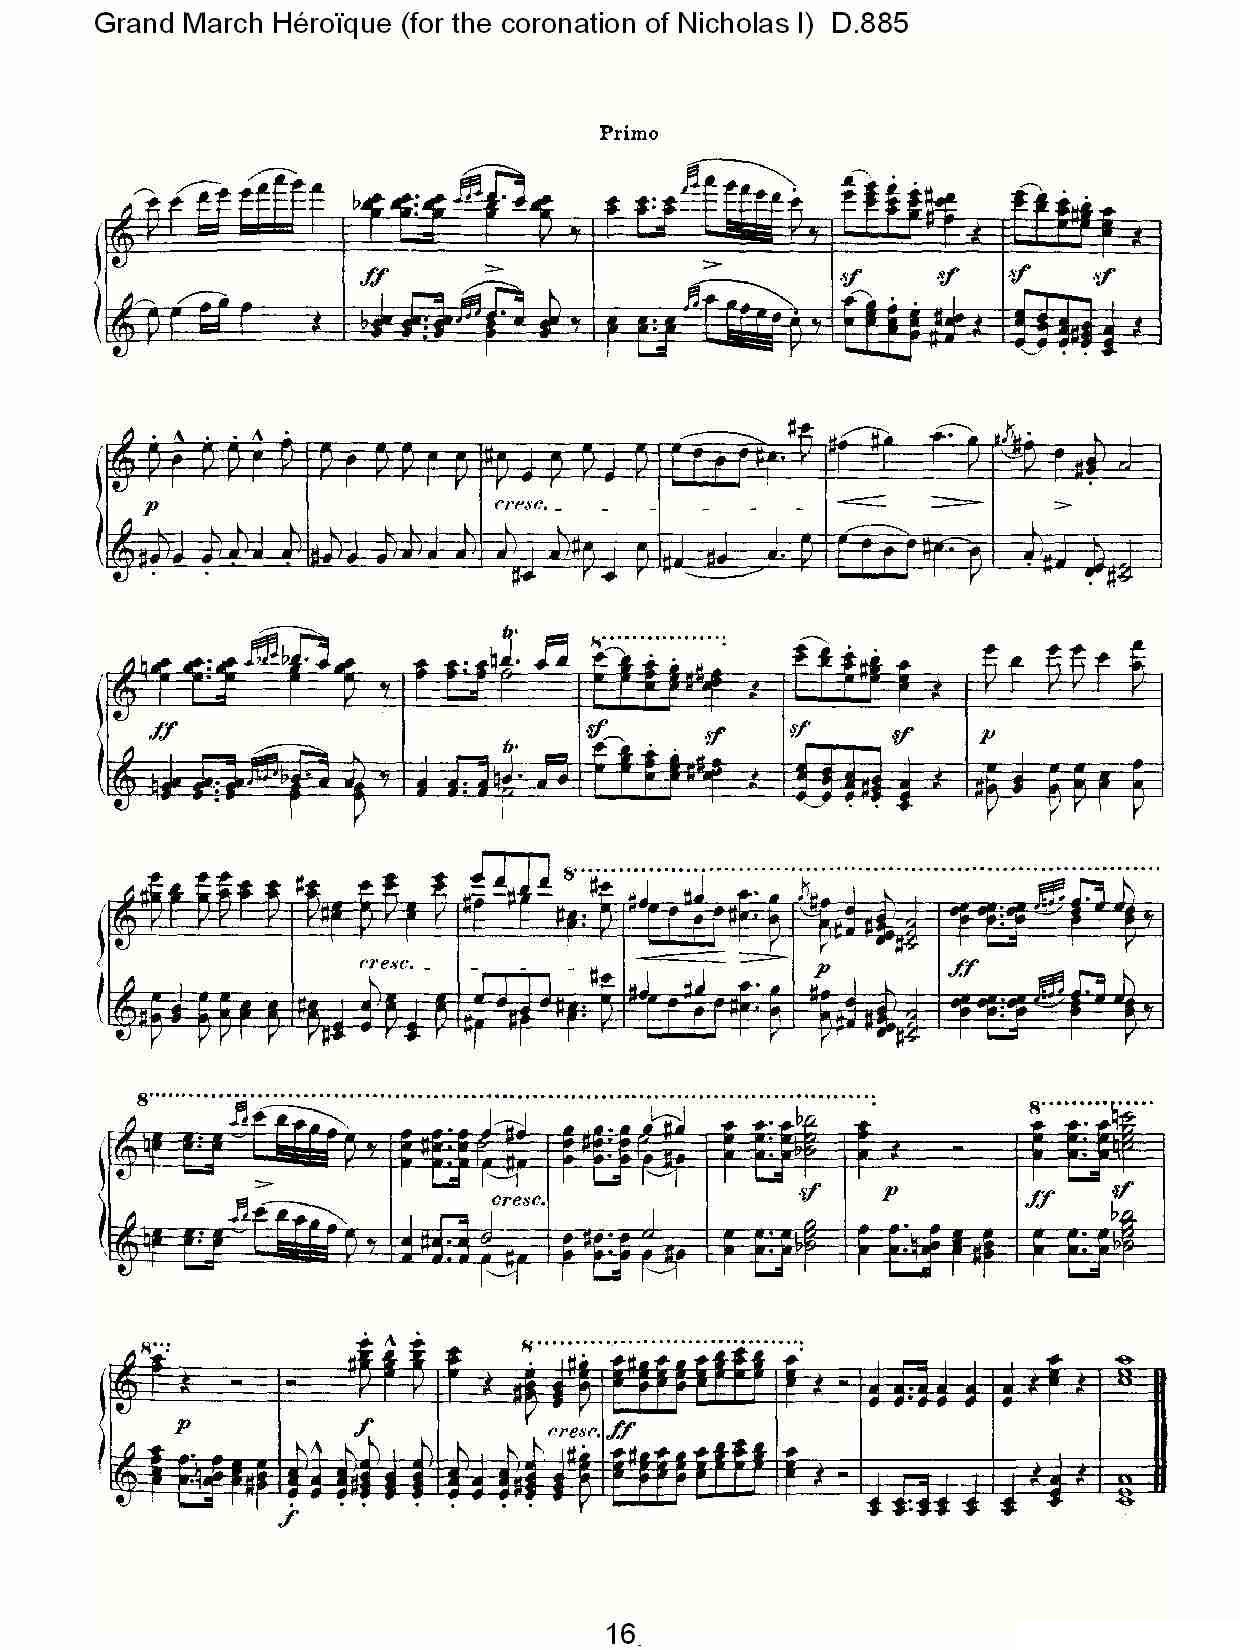 豪华进行曲（为尼古拉斯一世加冕礼而作)D.88）钢琴曲谱（图17）